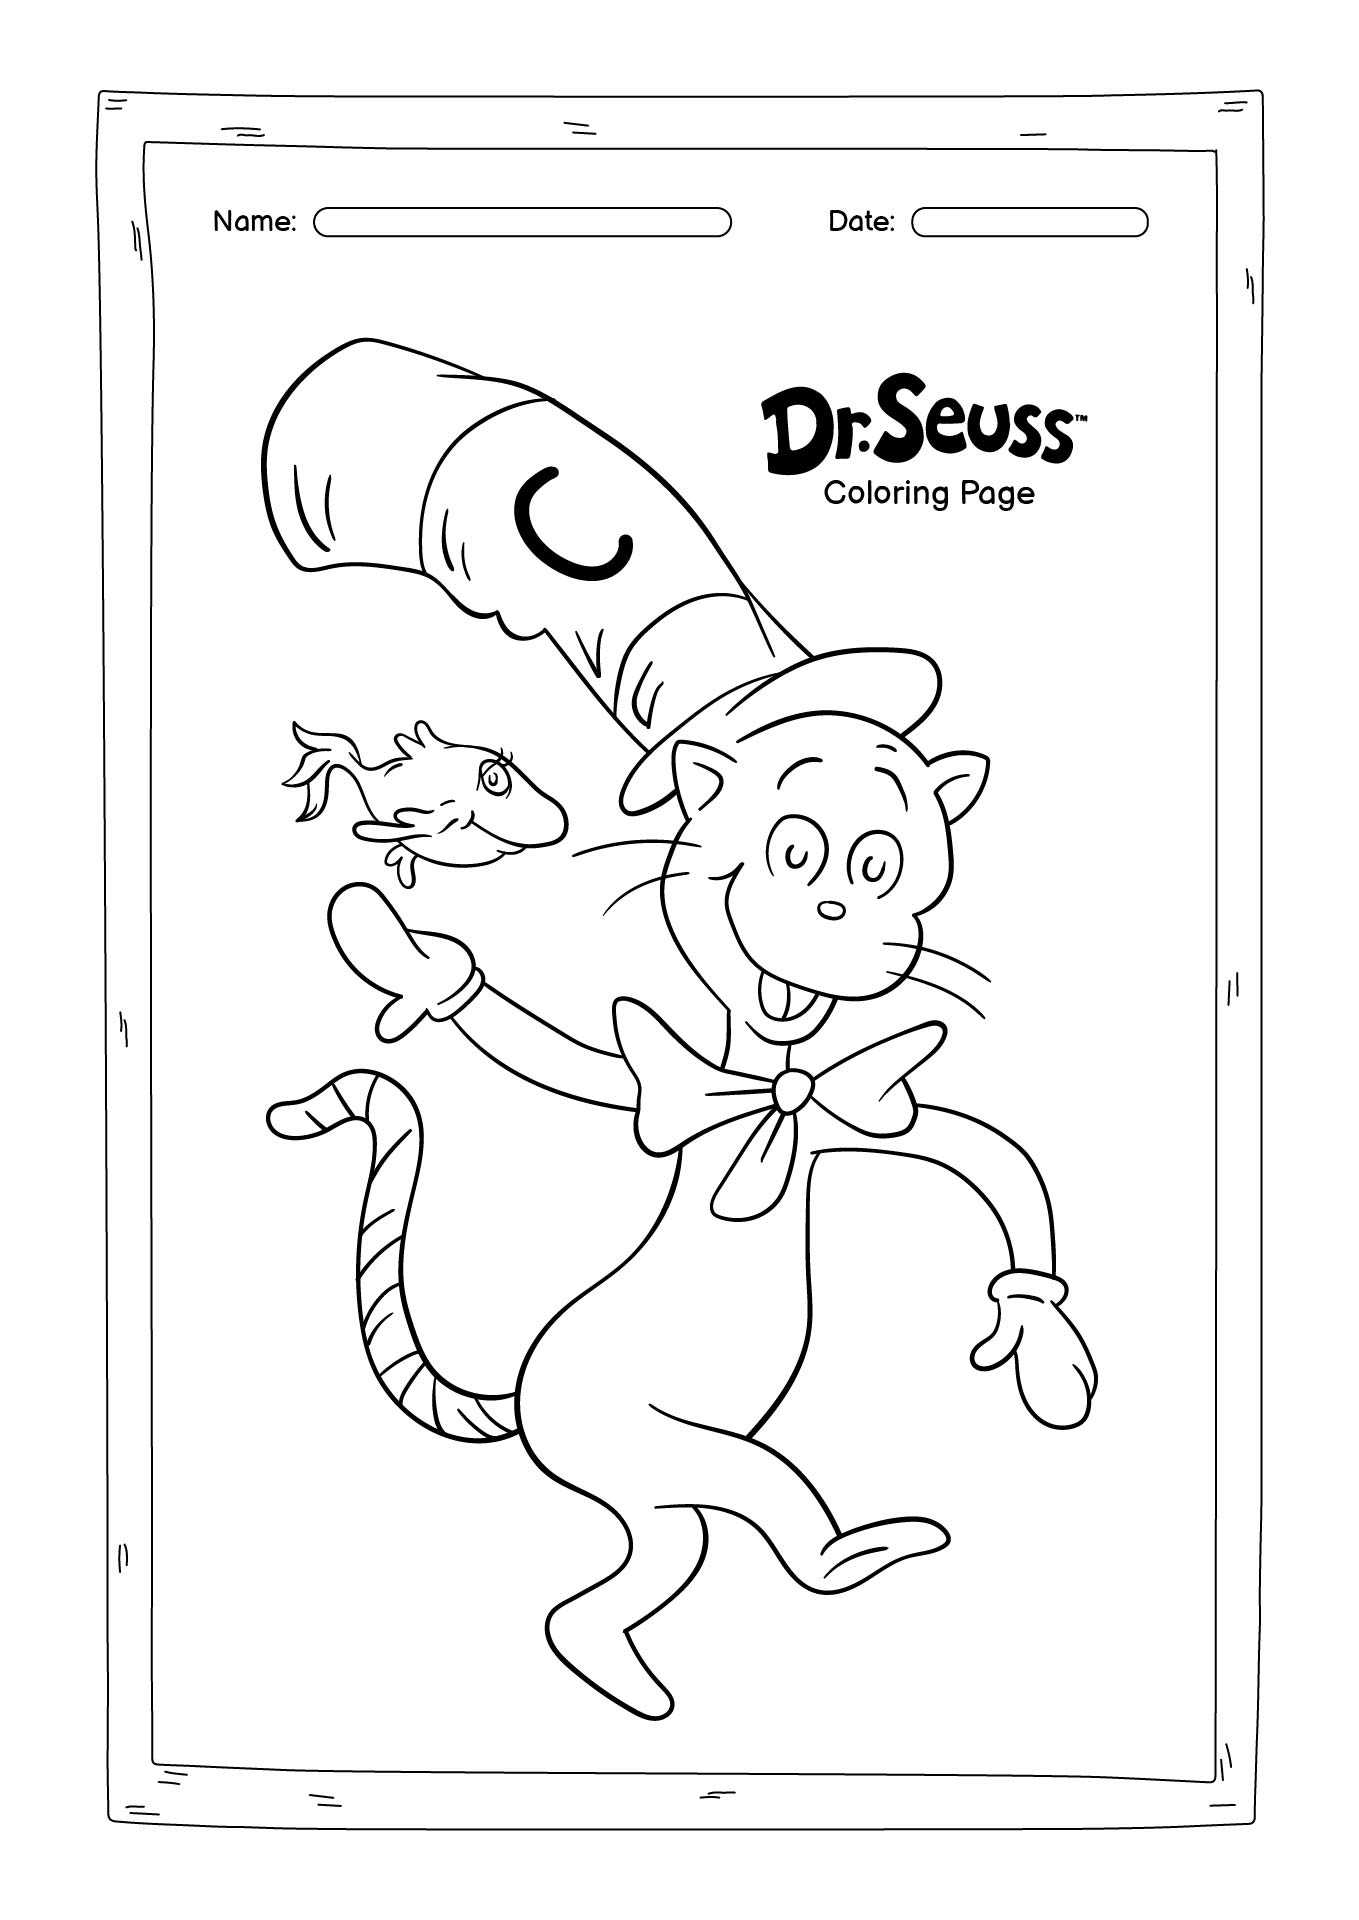 Dr. Seuss Coloring Pages Image